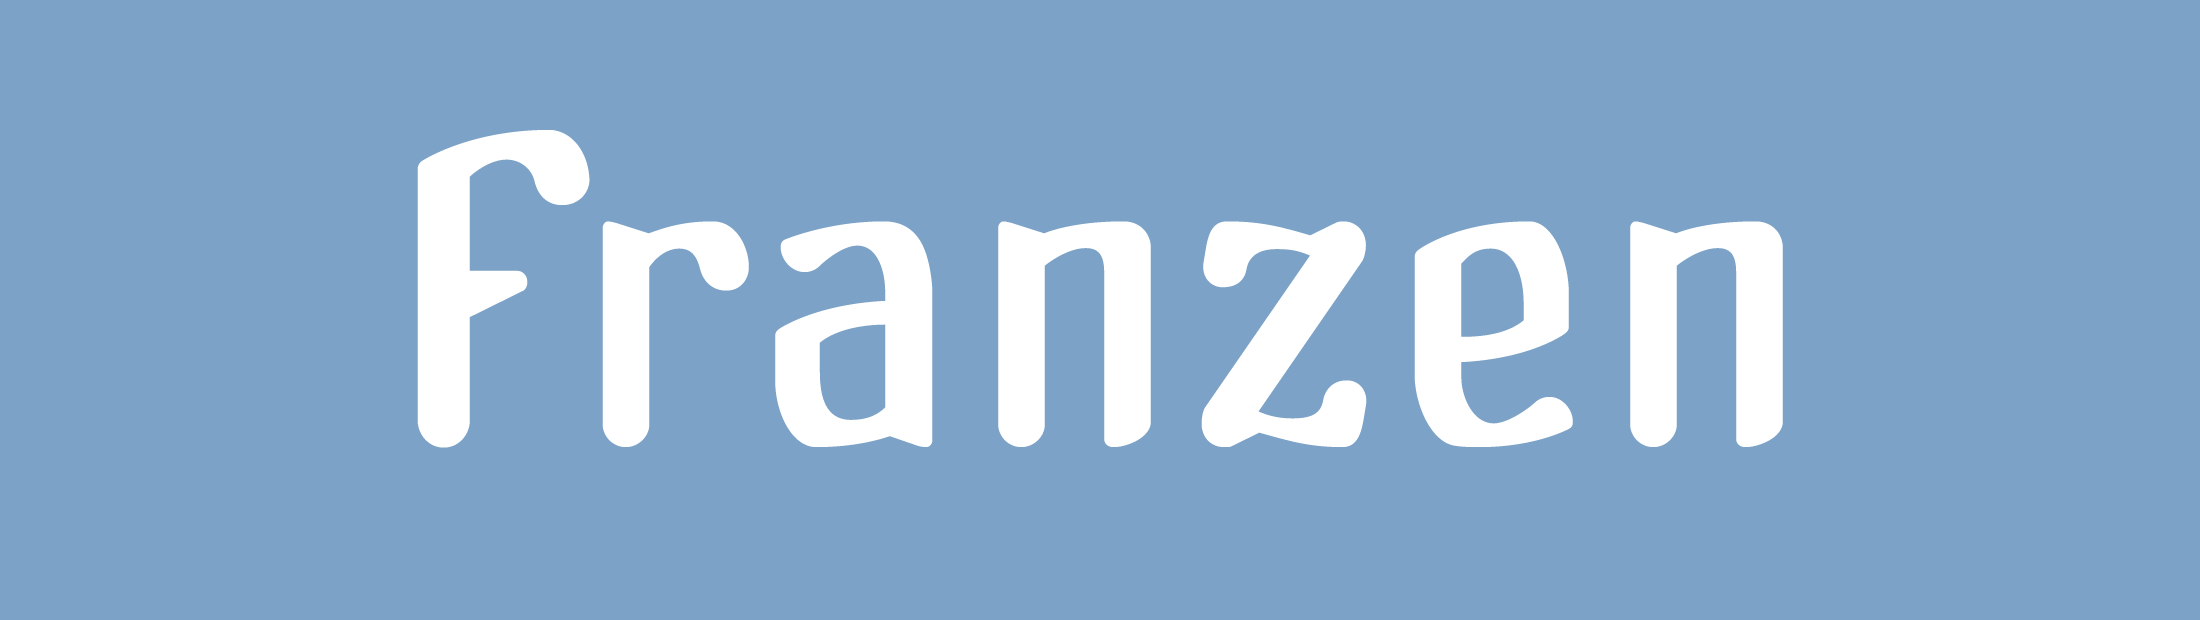 Franzen Font Banner